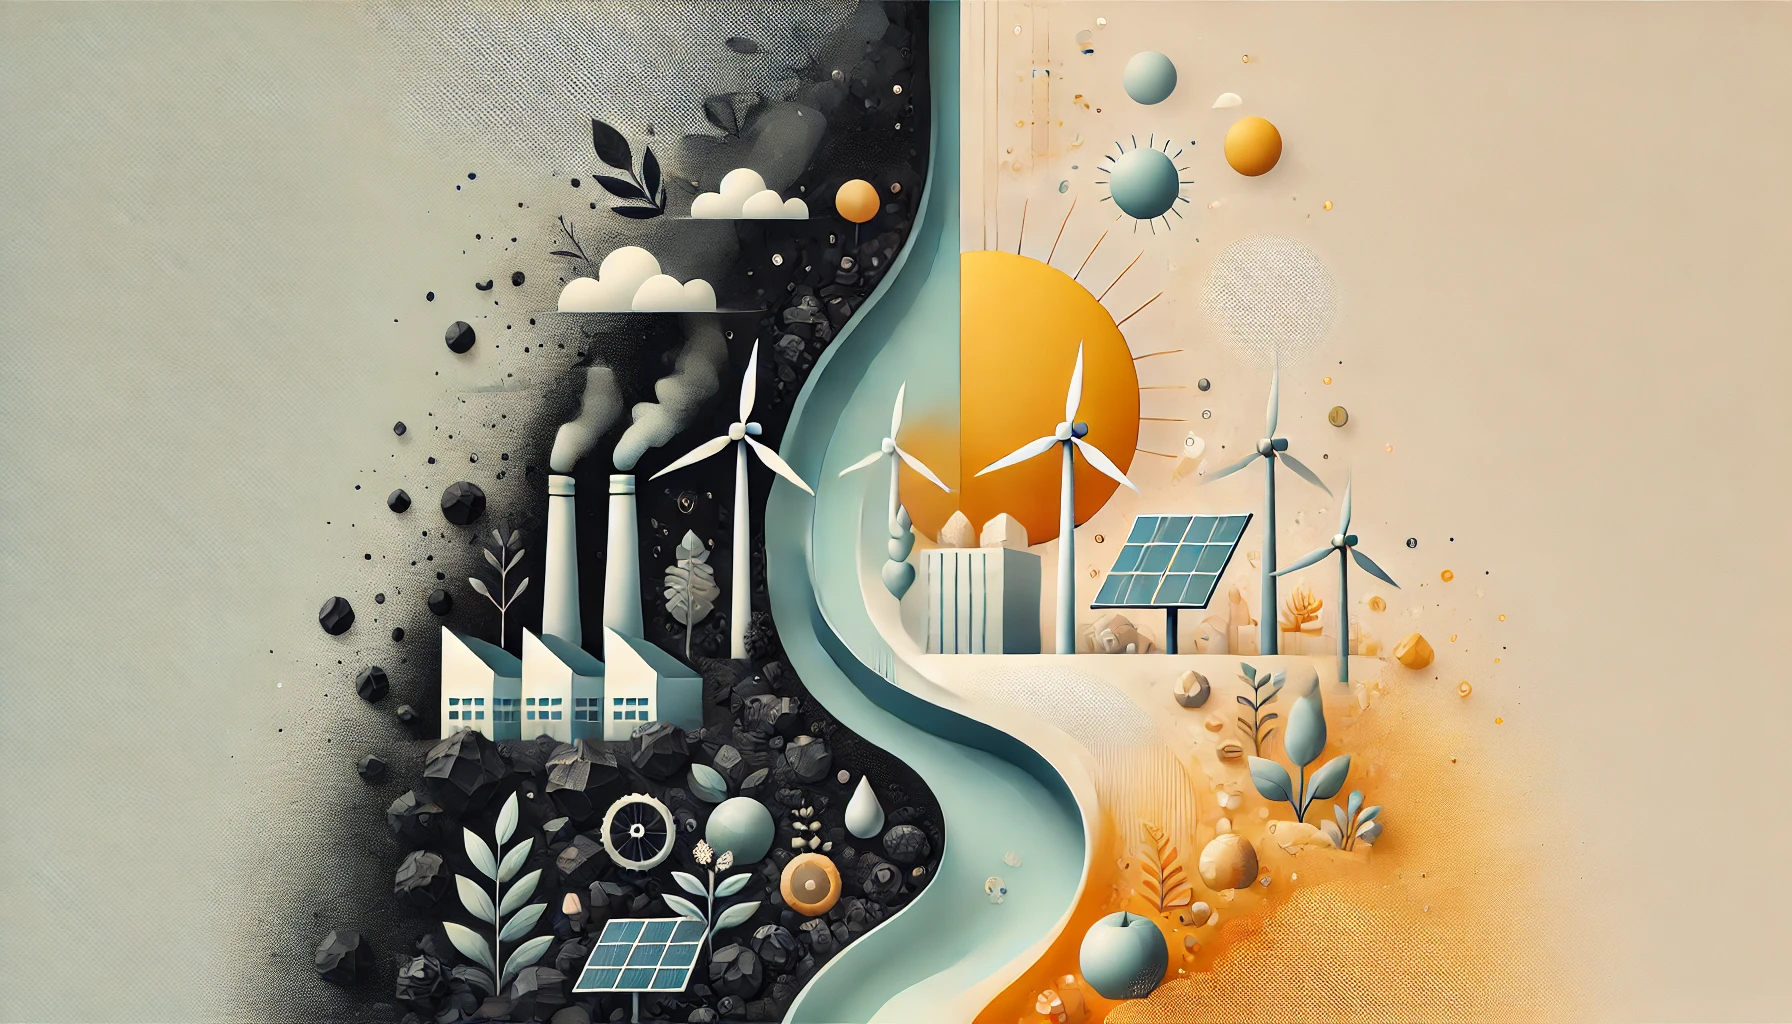 Foundation-Trilogie-Lausitz Strukturwandel Decarbonisierung Energiewende